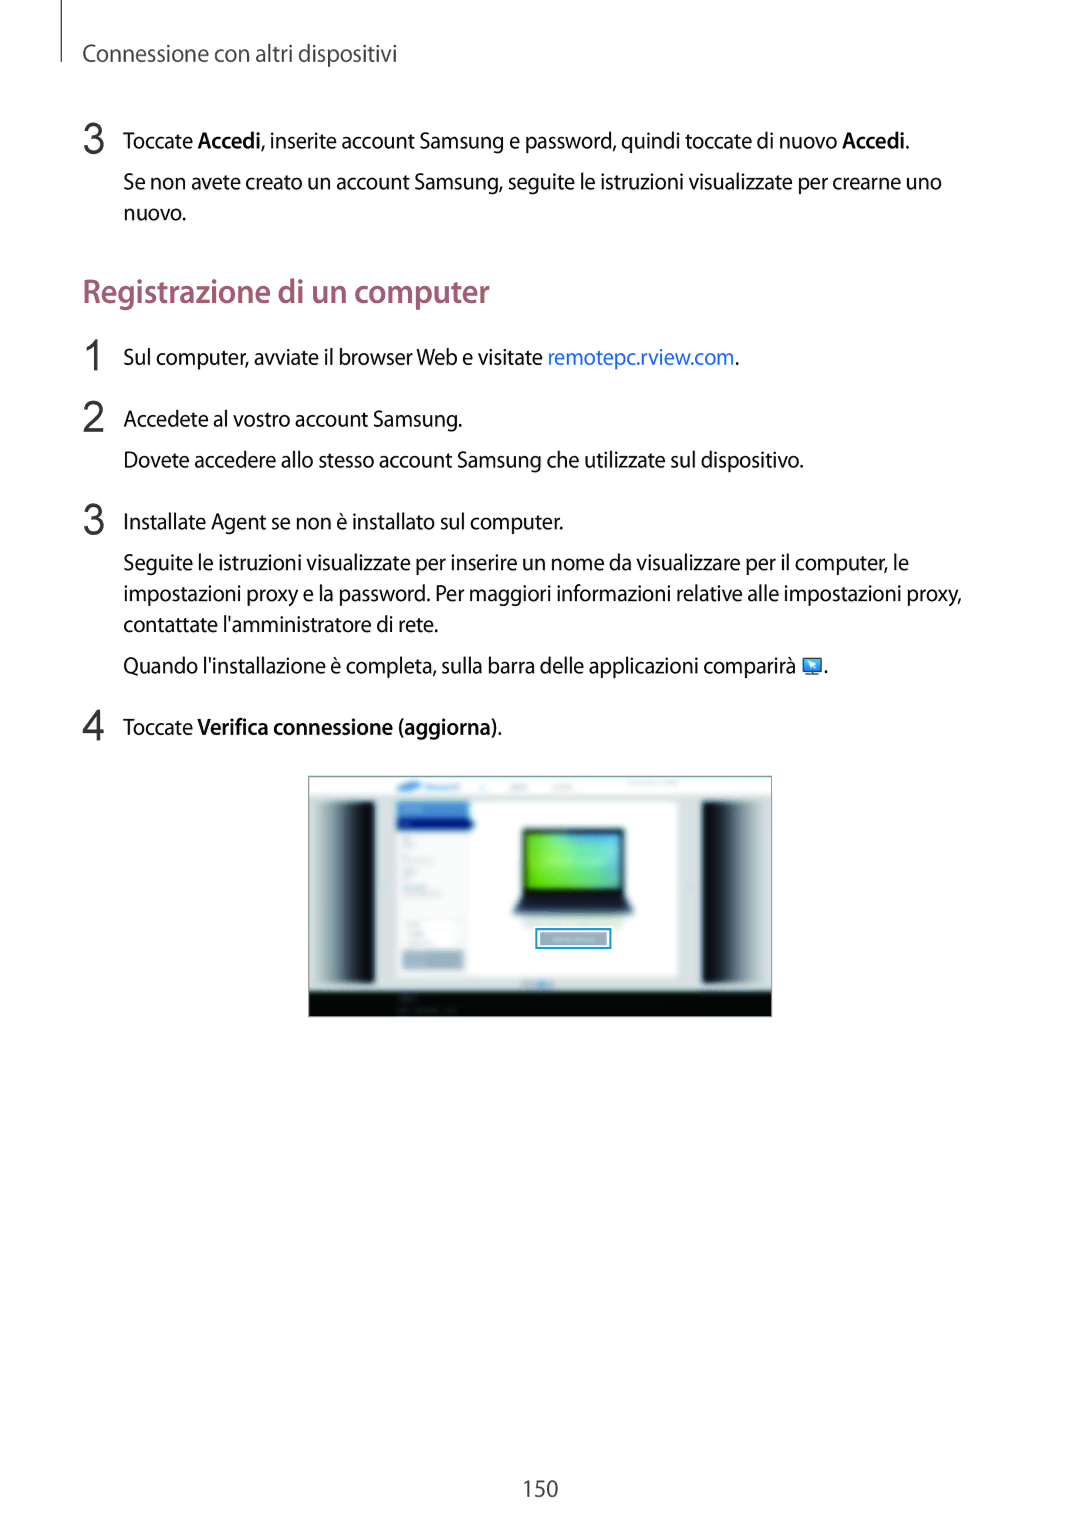 Samsung SM-T805NZWAXEO, SM-T805NTSAITV, SM-T805NZWAITV Registrazione di un computer, Toccate Verifica connessione aggiorna 